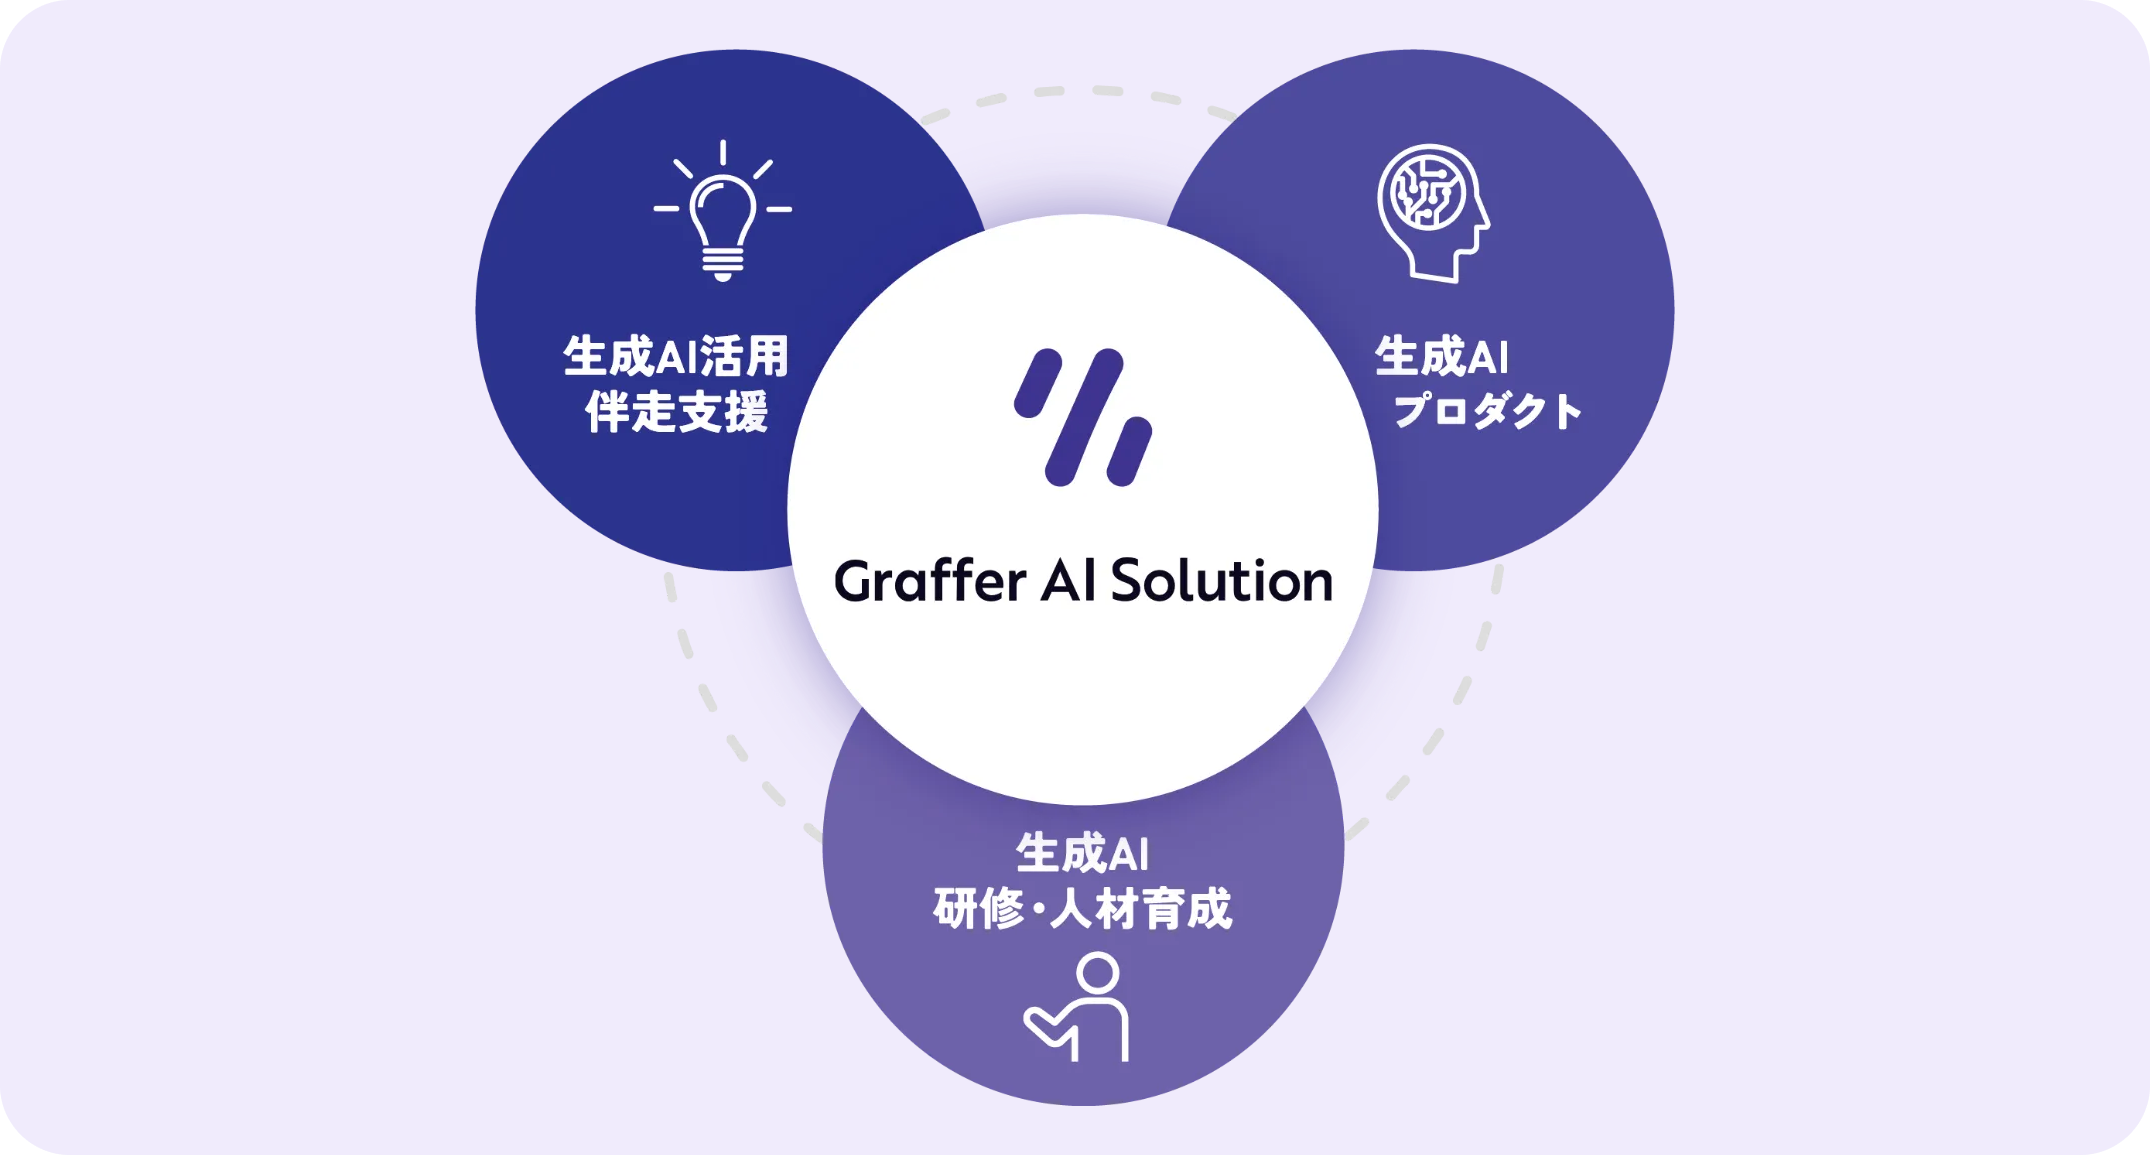 中京大学、生成AIの業務活用を推進する「Graffer AI Studio」を導入